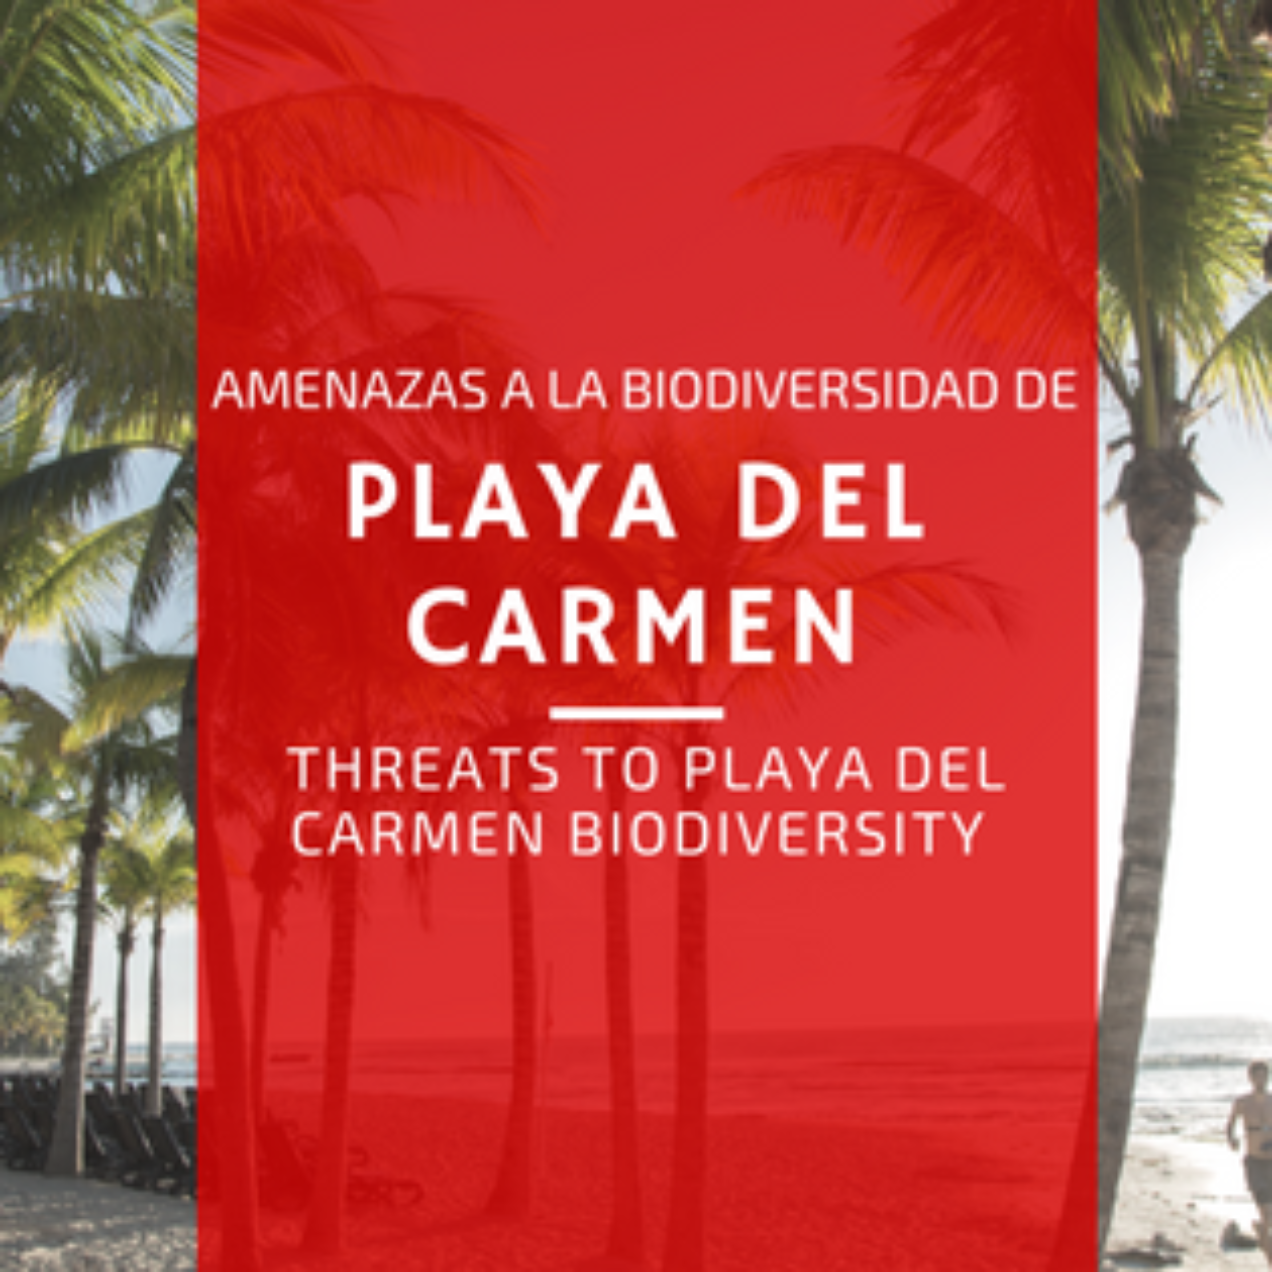 Riqueza natural de Playa del Carmen y cómo cuidarla